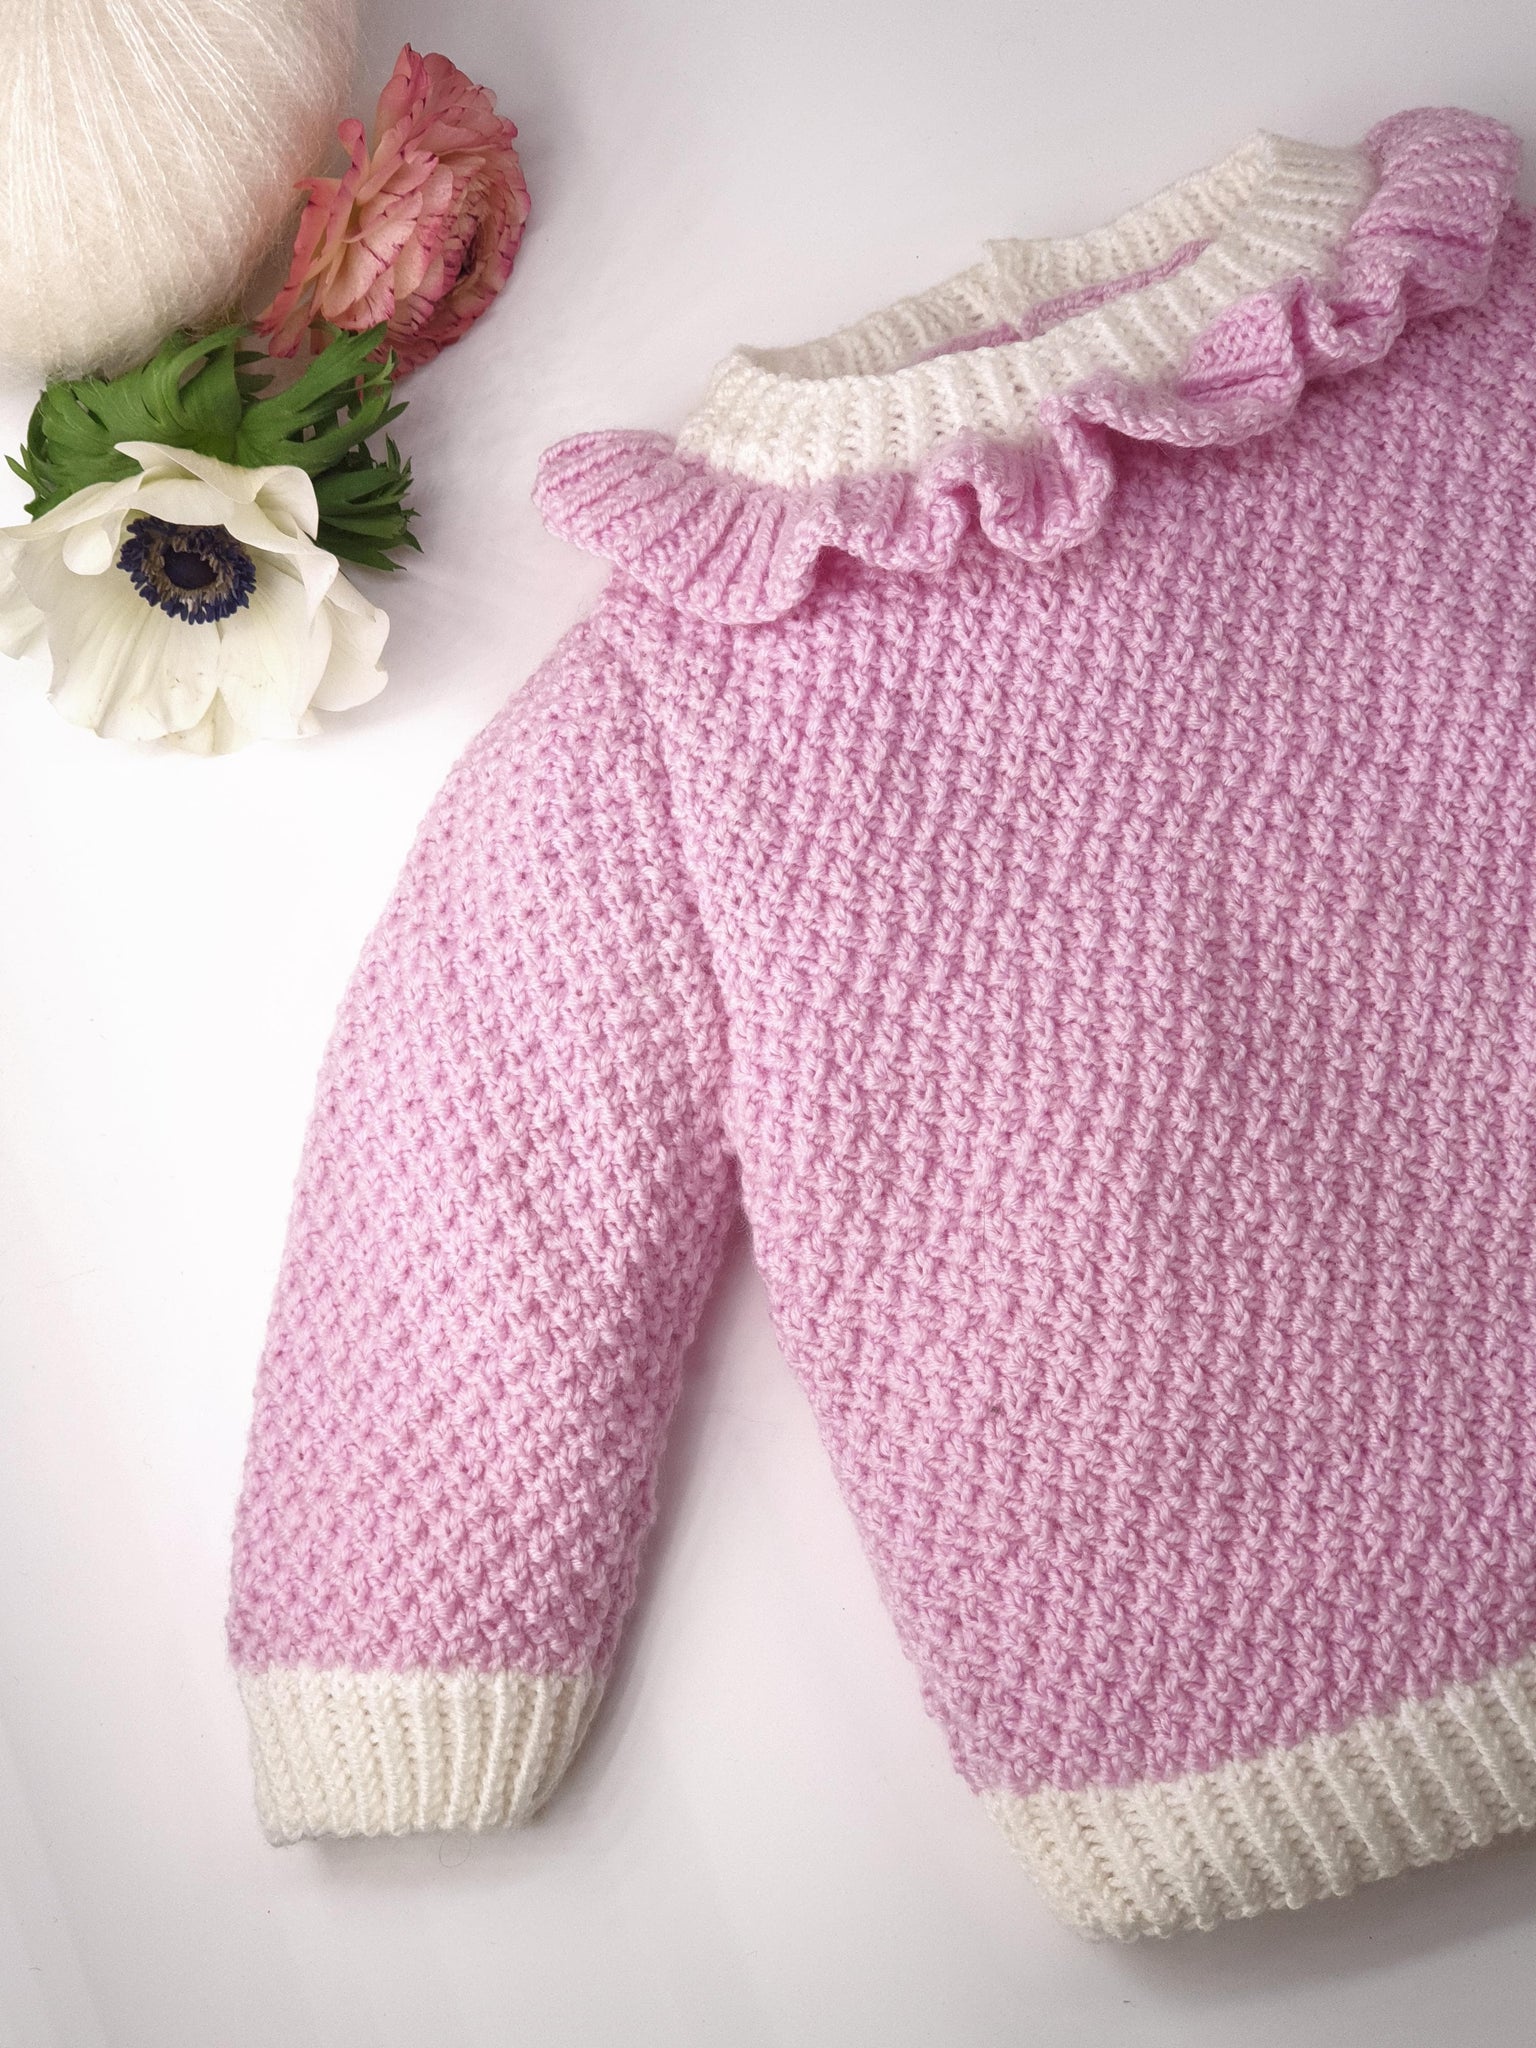 Lila : La brassière bébé à tricoter au point mousse – Anny Blatt